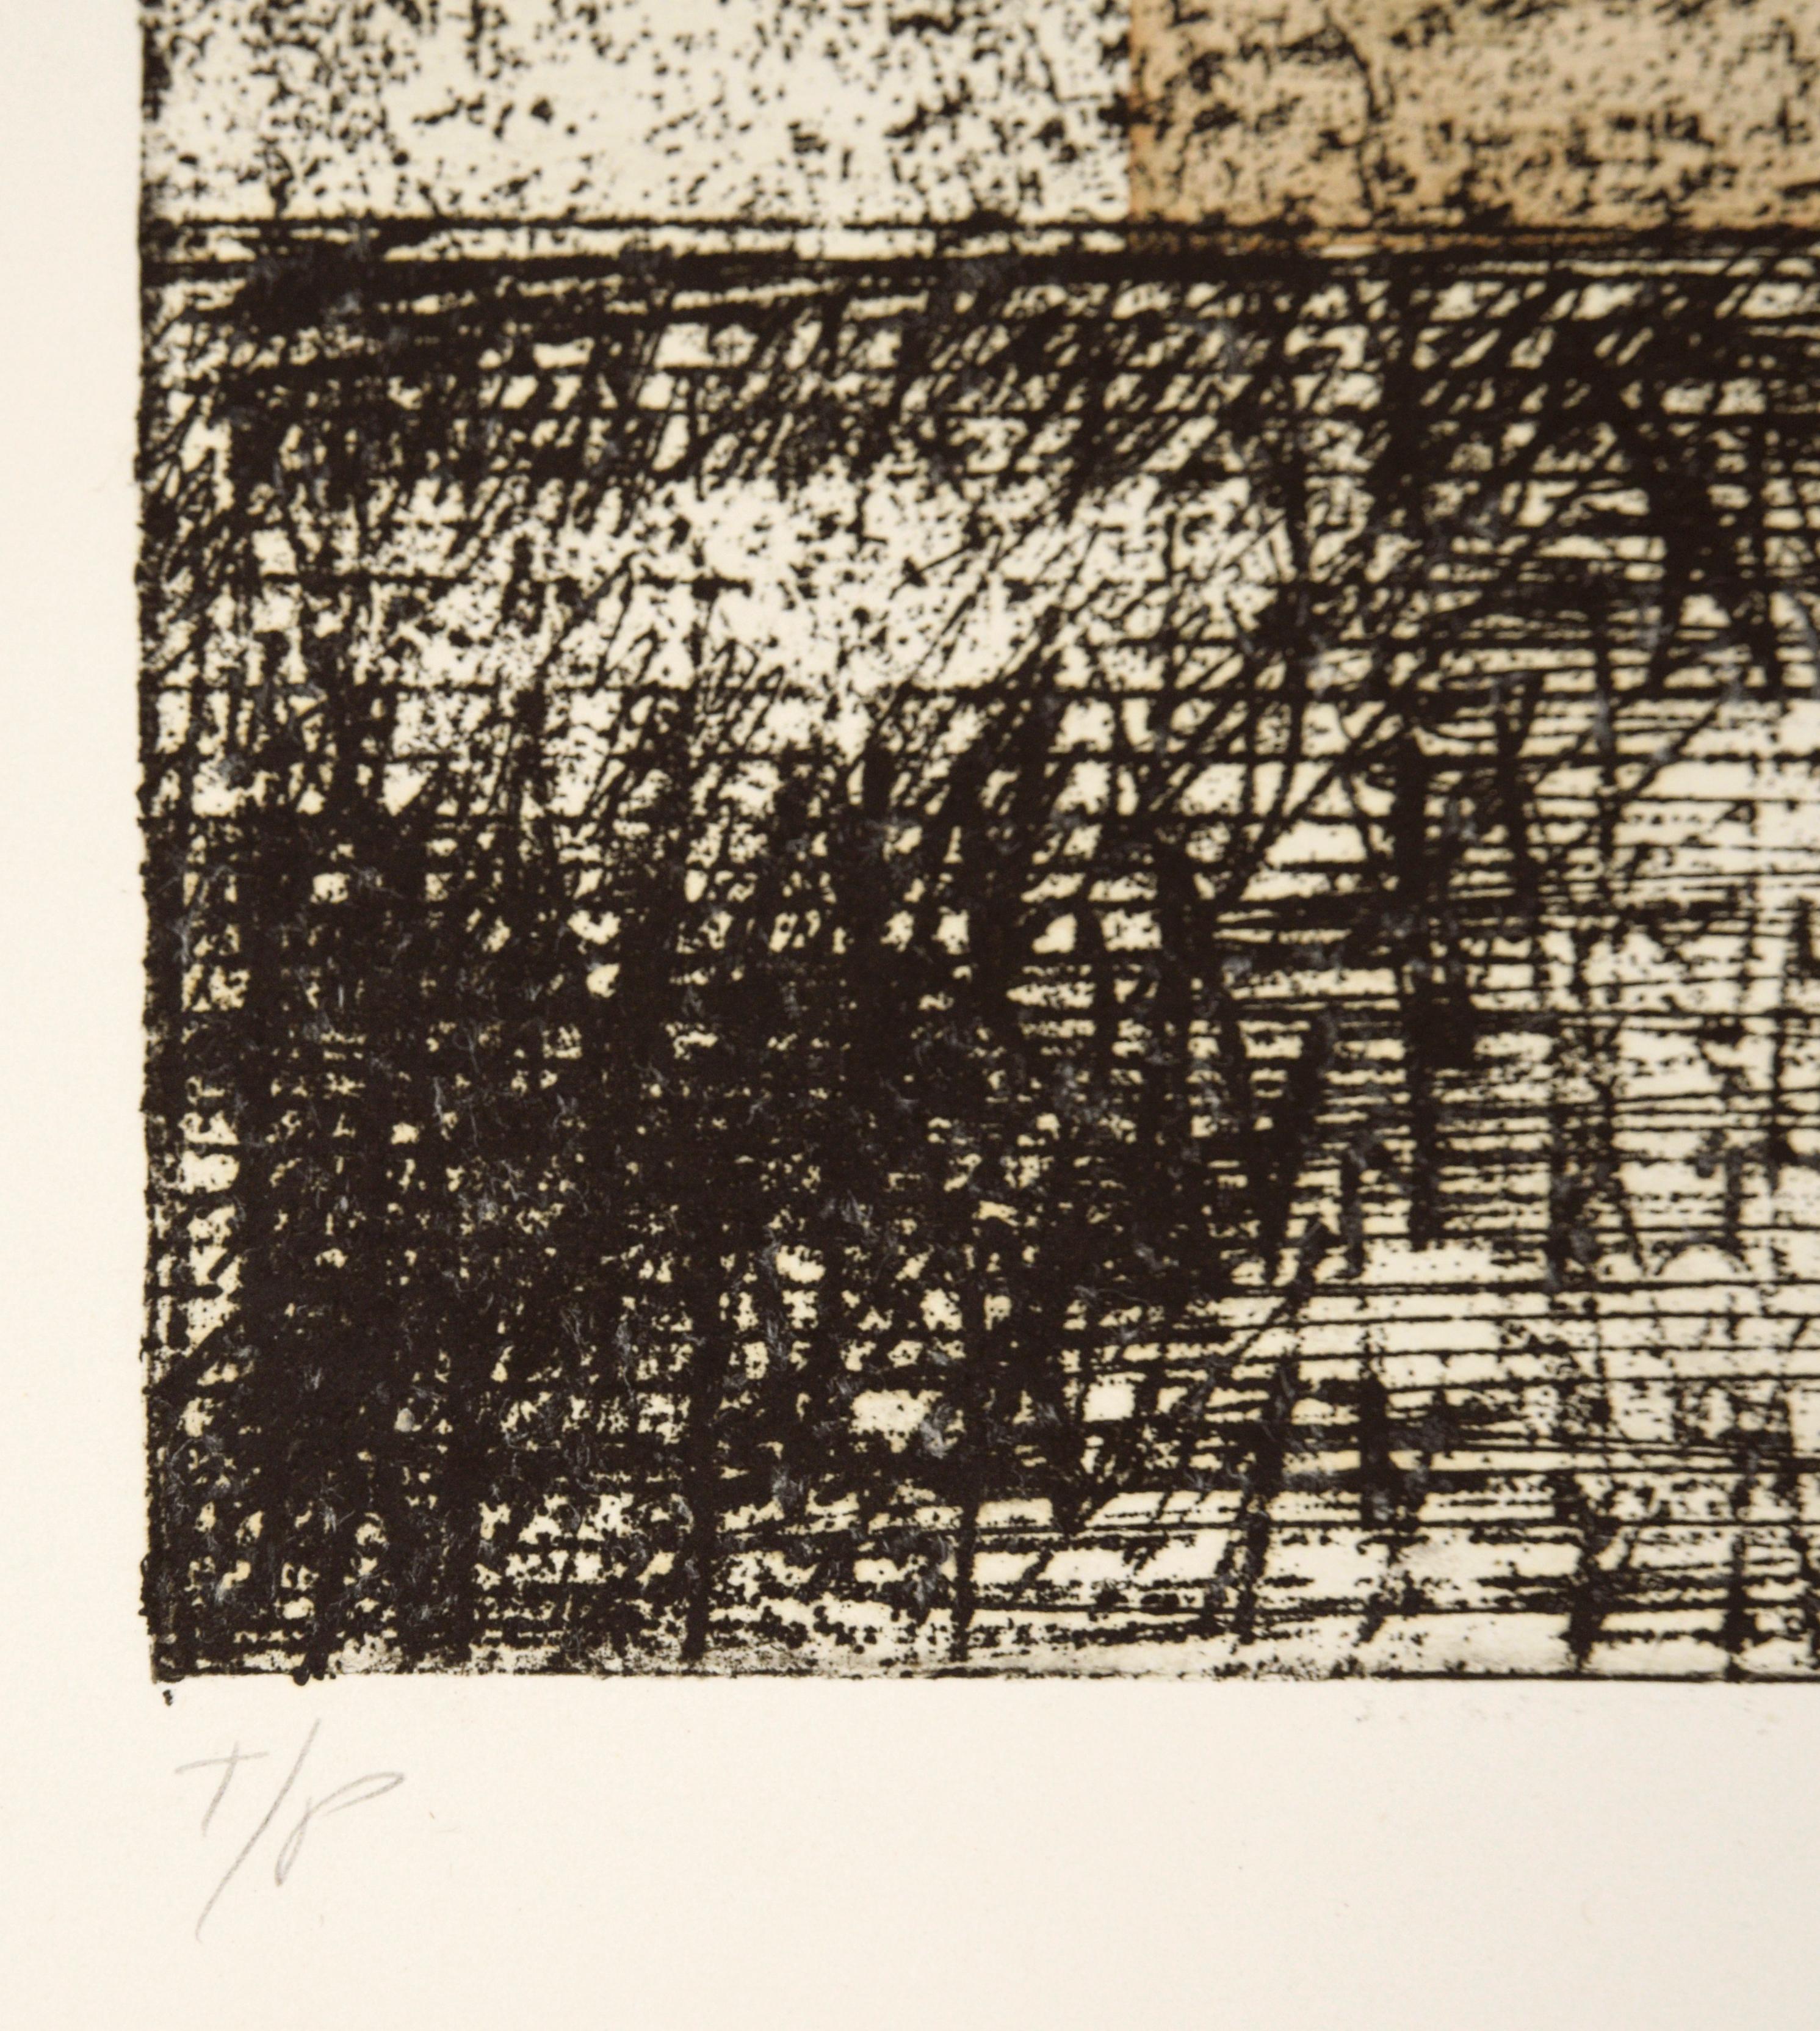 Abstrakte Radierung mit unentzifferbaren Textschichten von Michael Pauker (Amerikaner, geb. 1957). Der braune Block in der Mitte des Stücks ist ein aufgebrachtes Stück Papier. Dieses Stück ist ein Probedruck des Künstlers und ist mit 